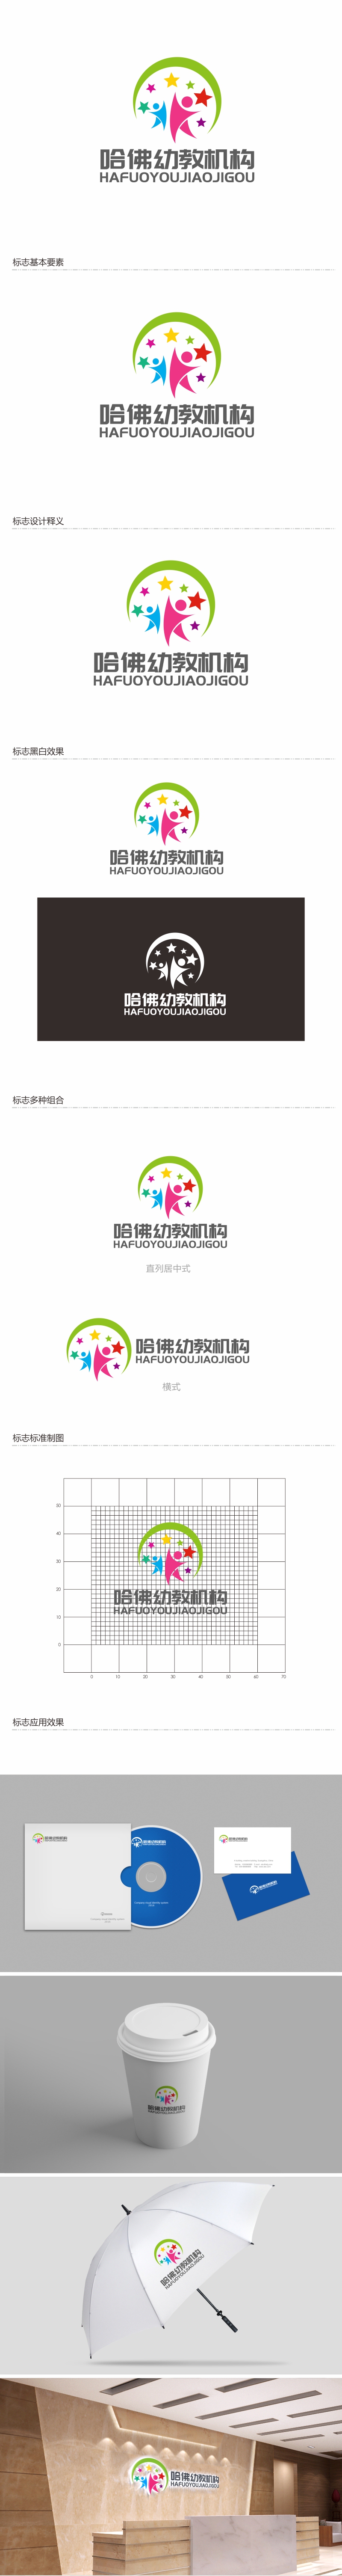 陈川的哈佛幼教机构logo设计